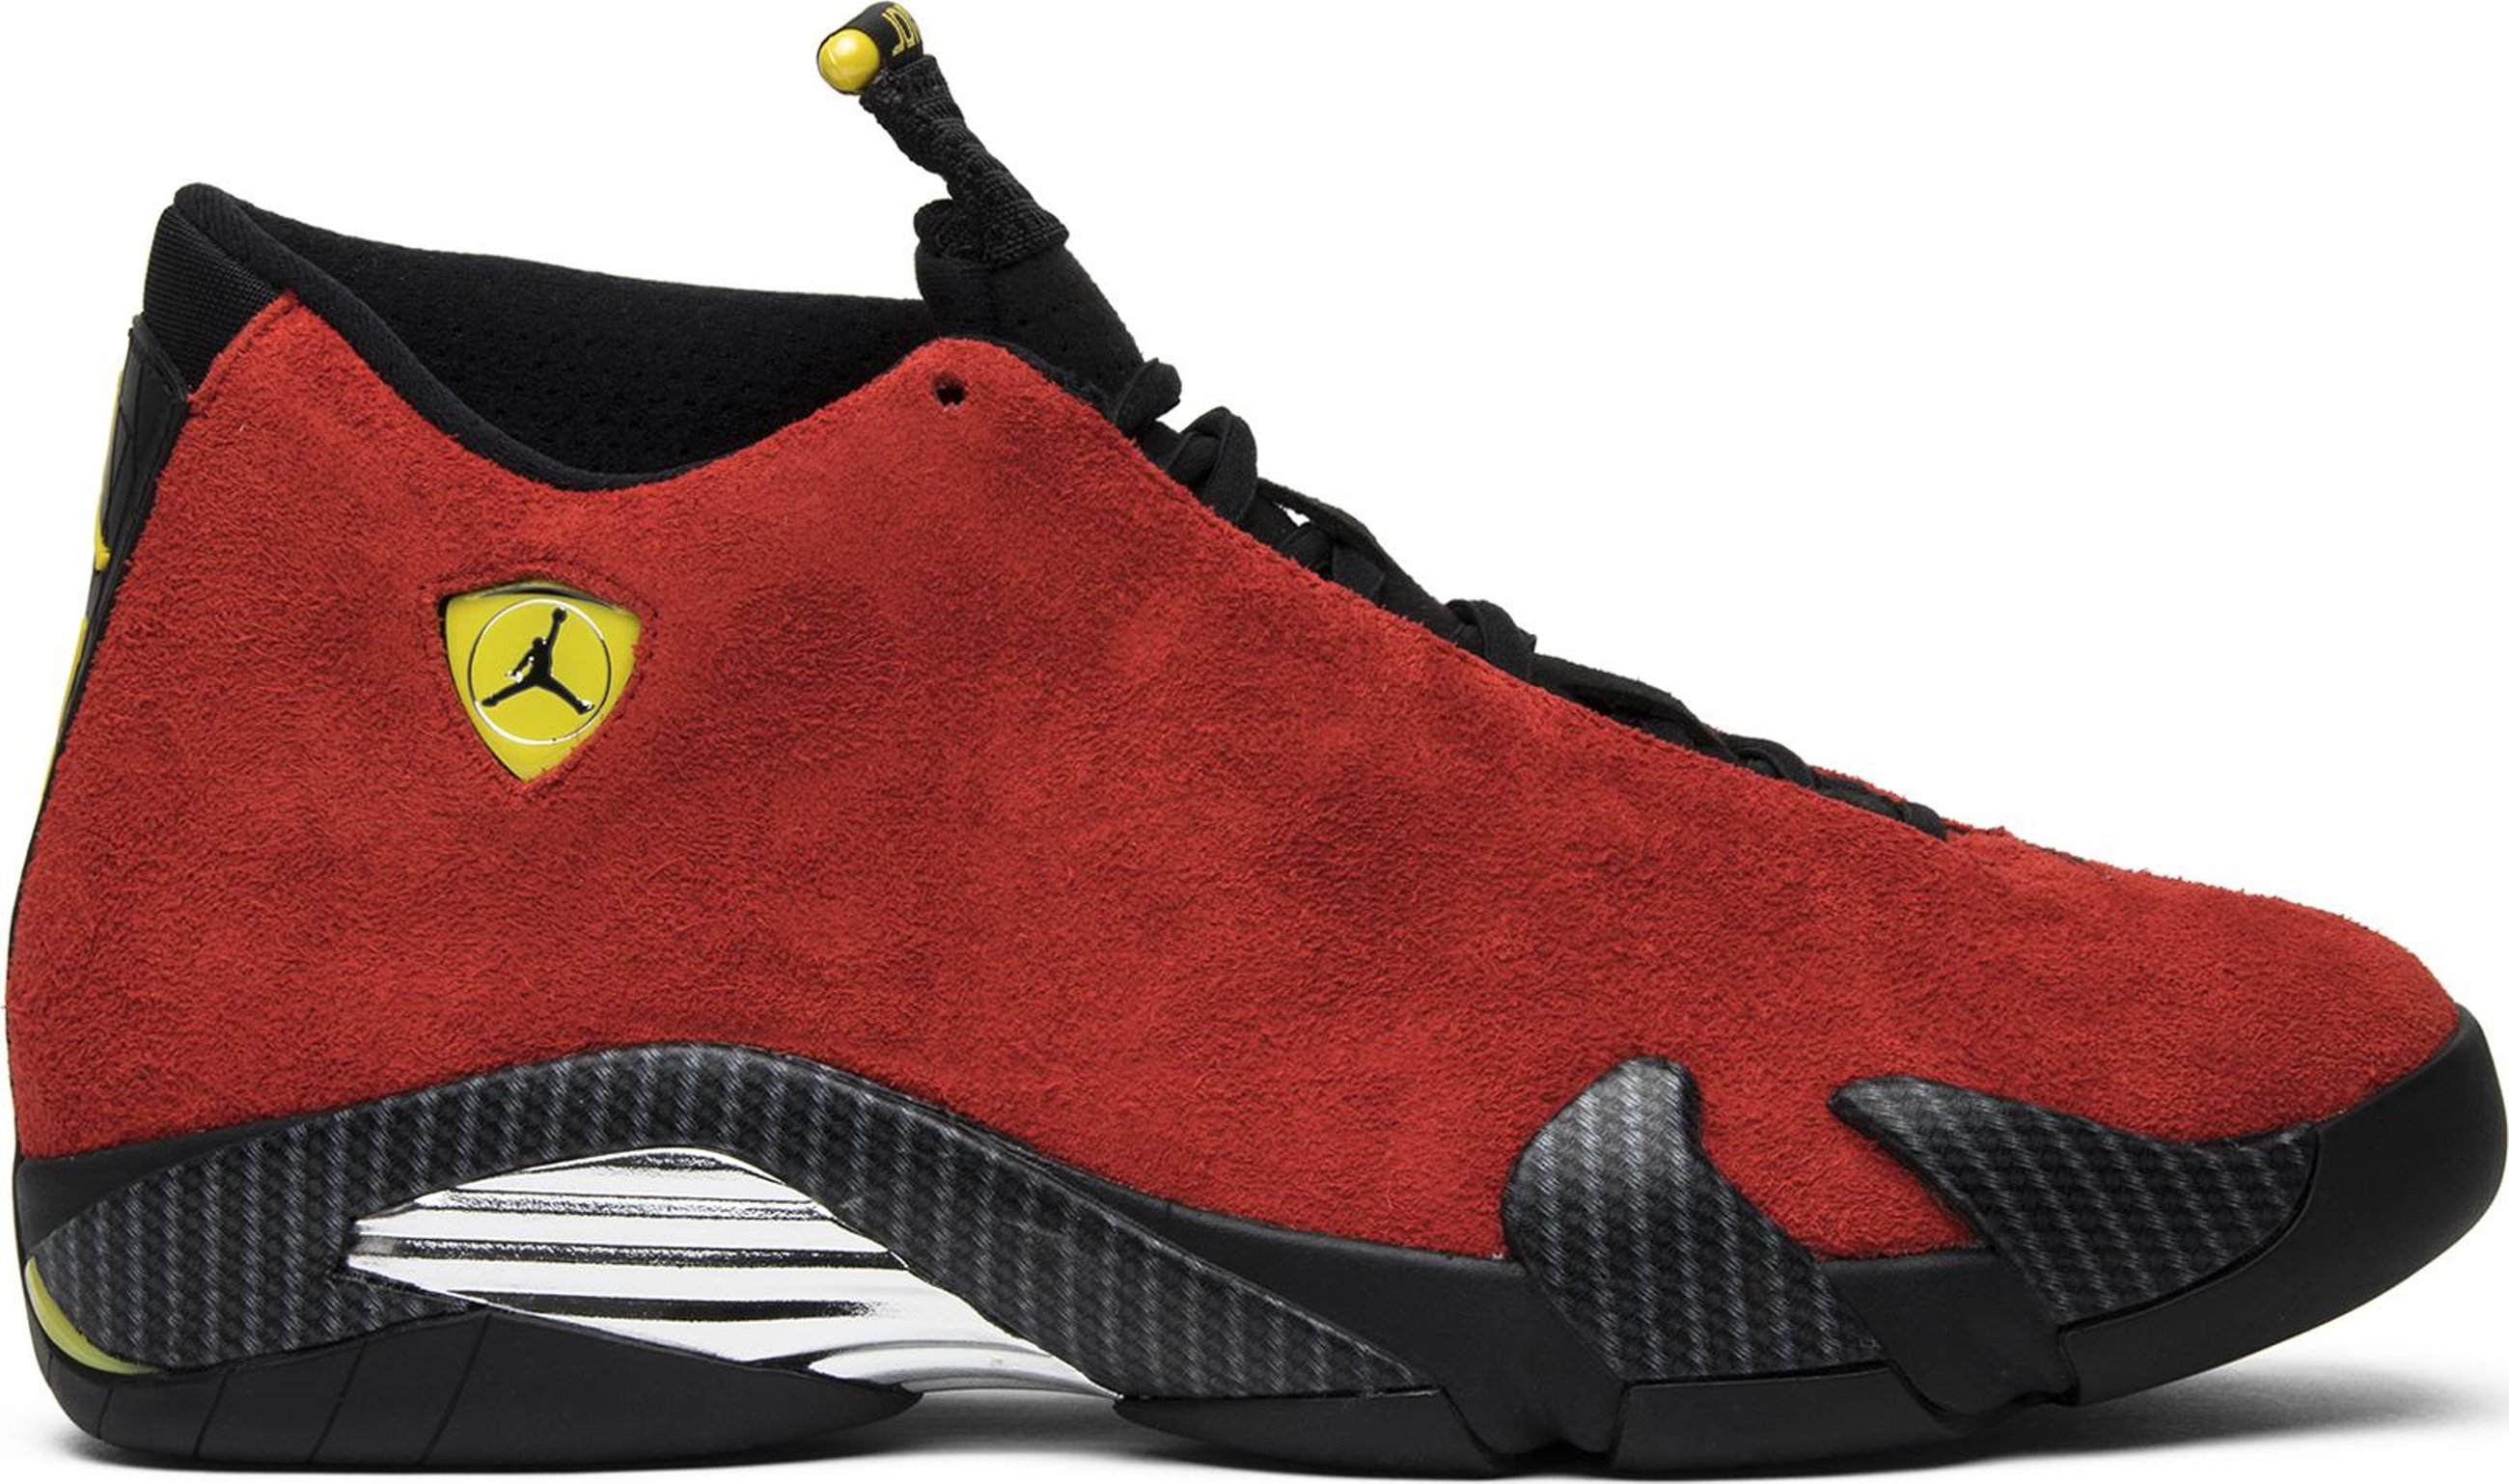 Buy Air Jordan 14 Retro 'Ferrari' - 654459 670 | GOAT